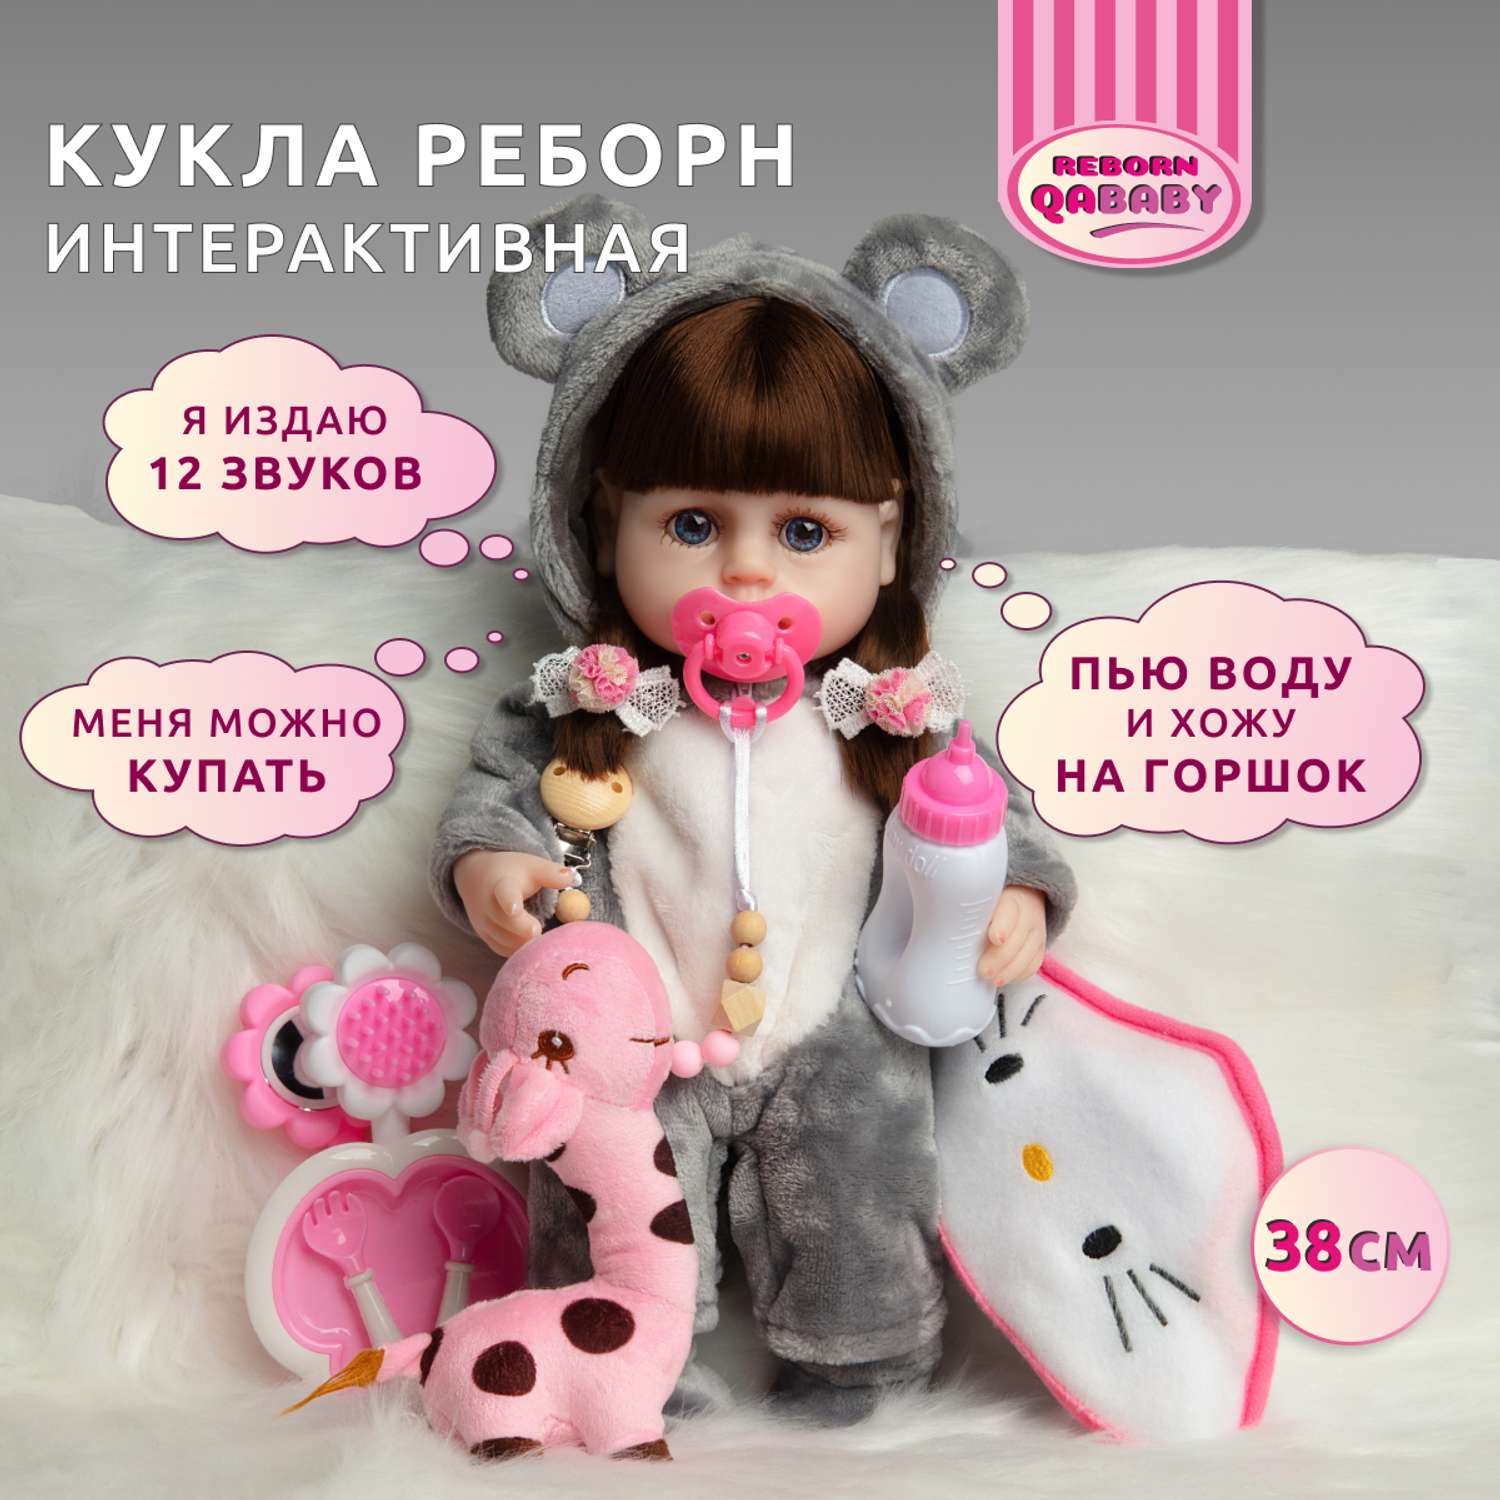 Кукла Реборн QA BABY Мисти девочка интерактивная Пупс набор игрушки для ванной для девочки 38 см 3808 - фото 1